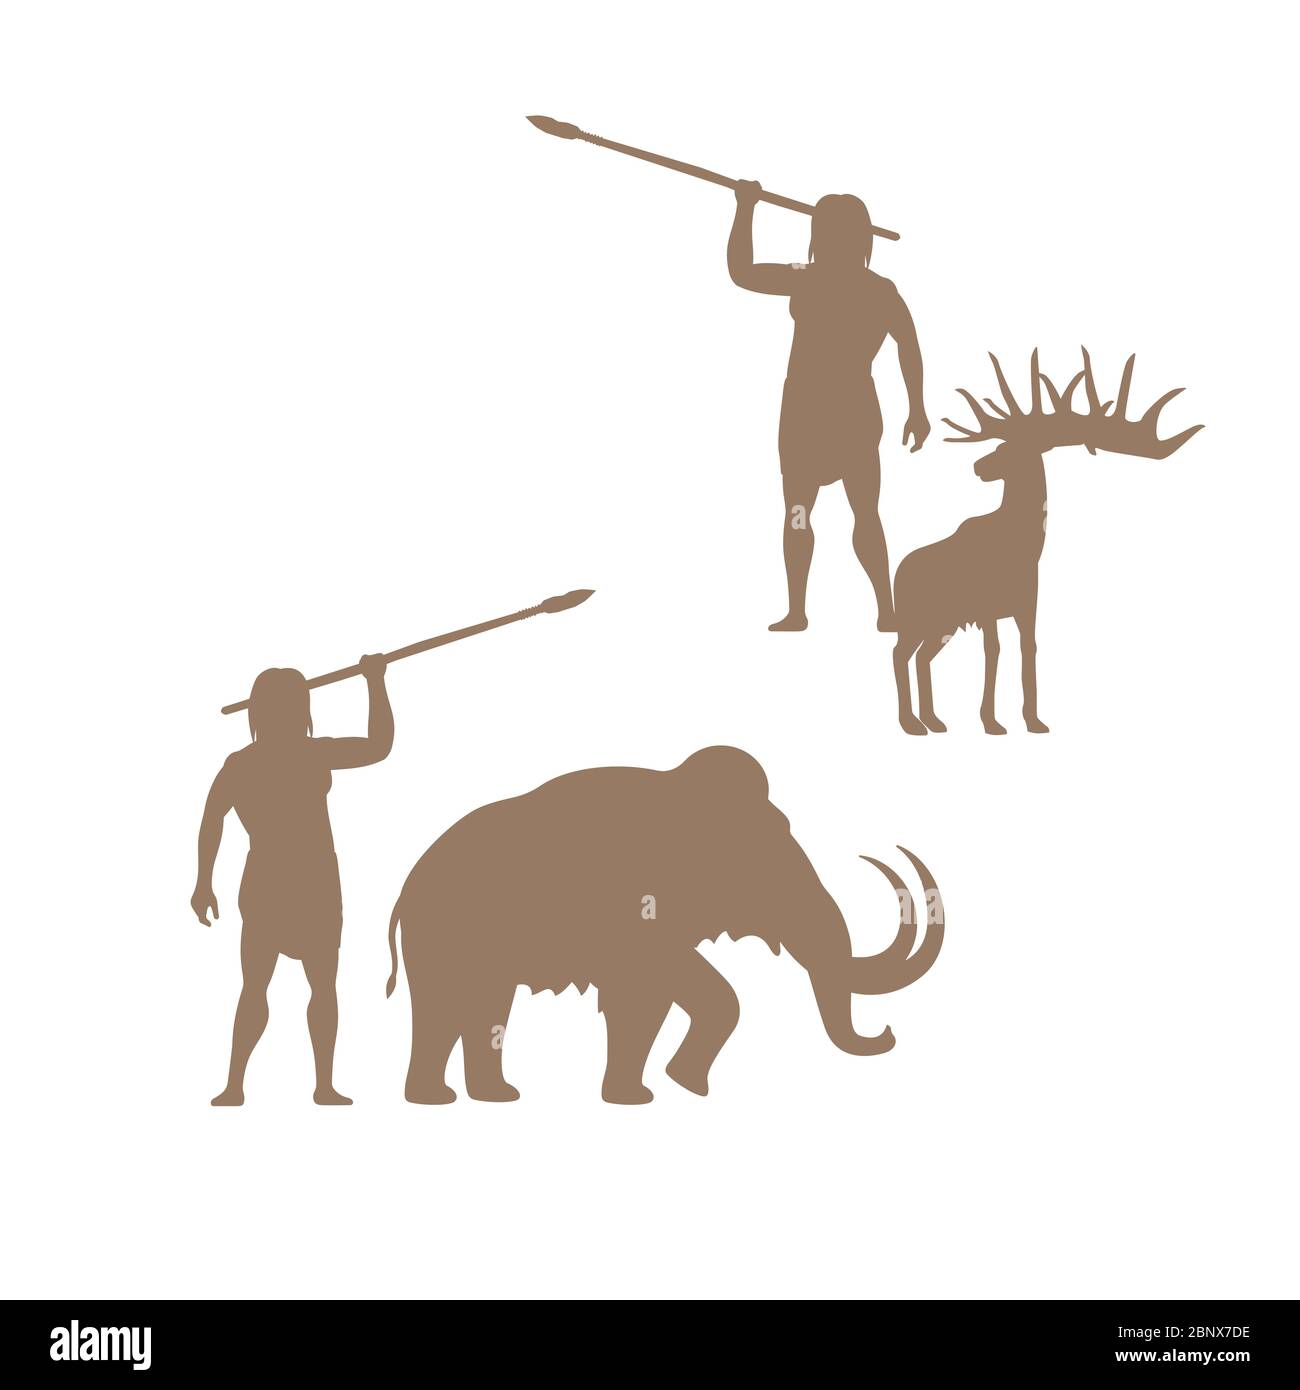 Silhouettes d'hommes et d'animaux anciens, mammouth et cerf, vecteur isolé pour la conception de logo Illustration de Vecteur